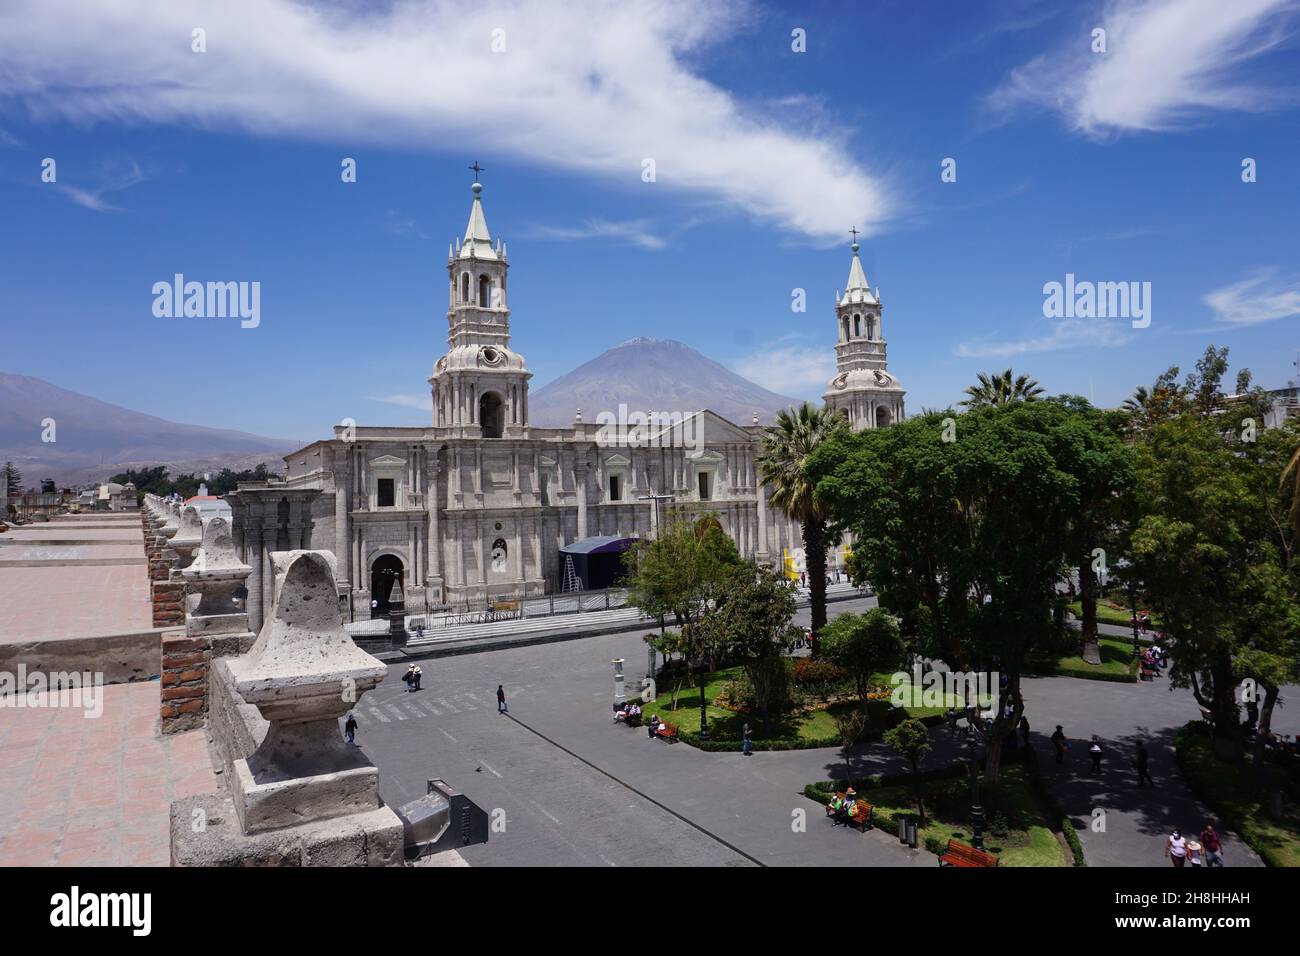 Basilica Catedral de Arequipa, Peru Stock Photo